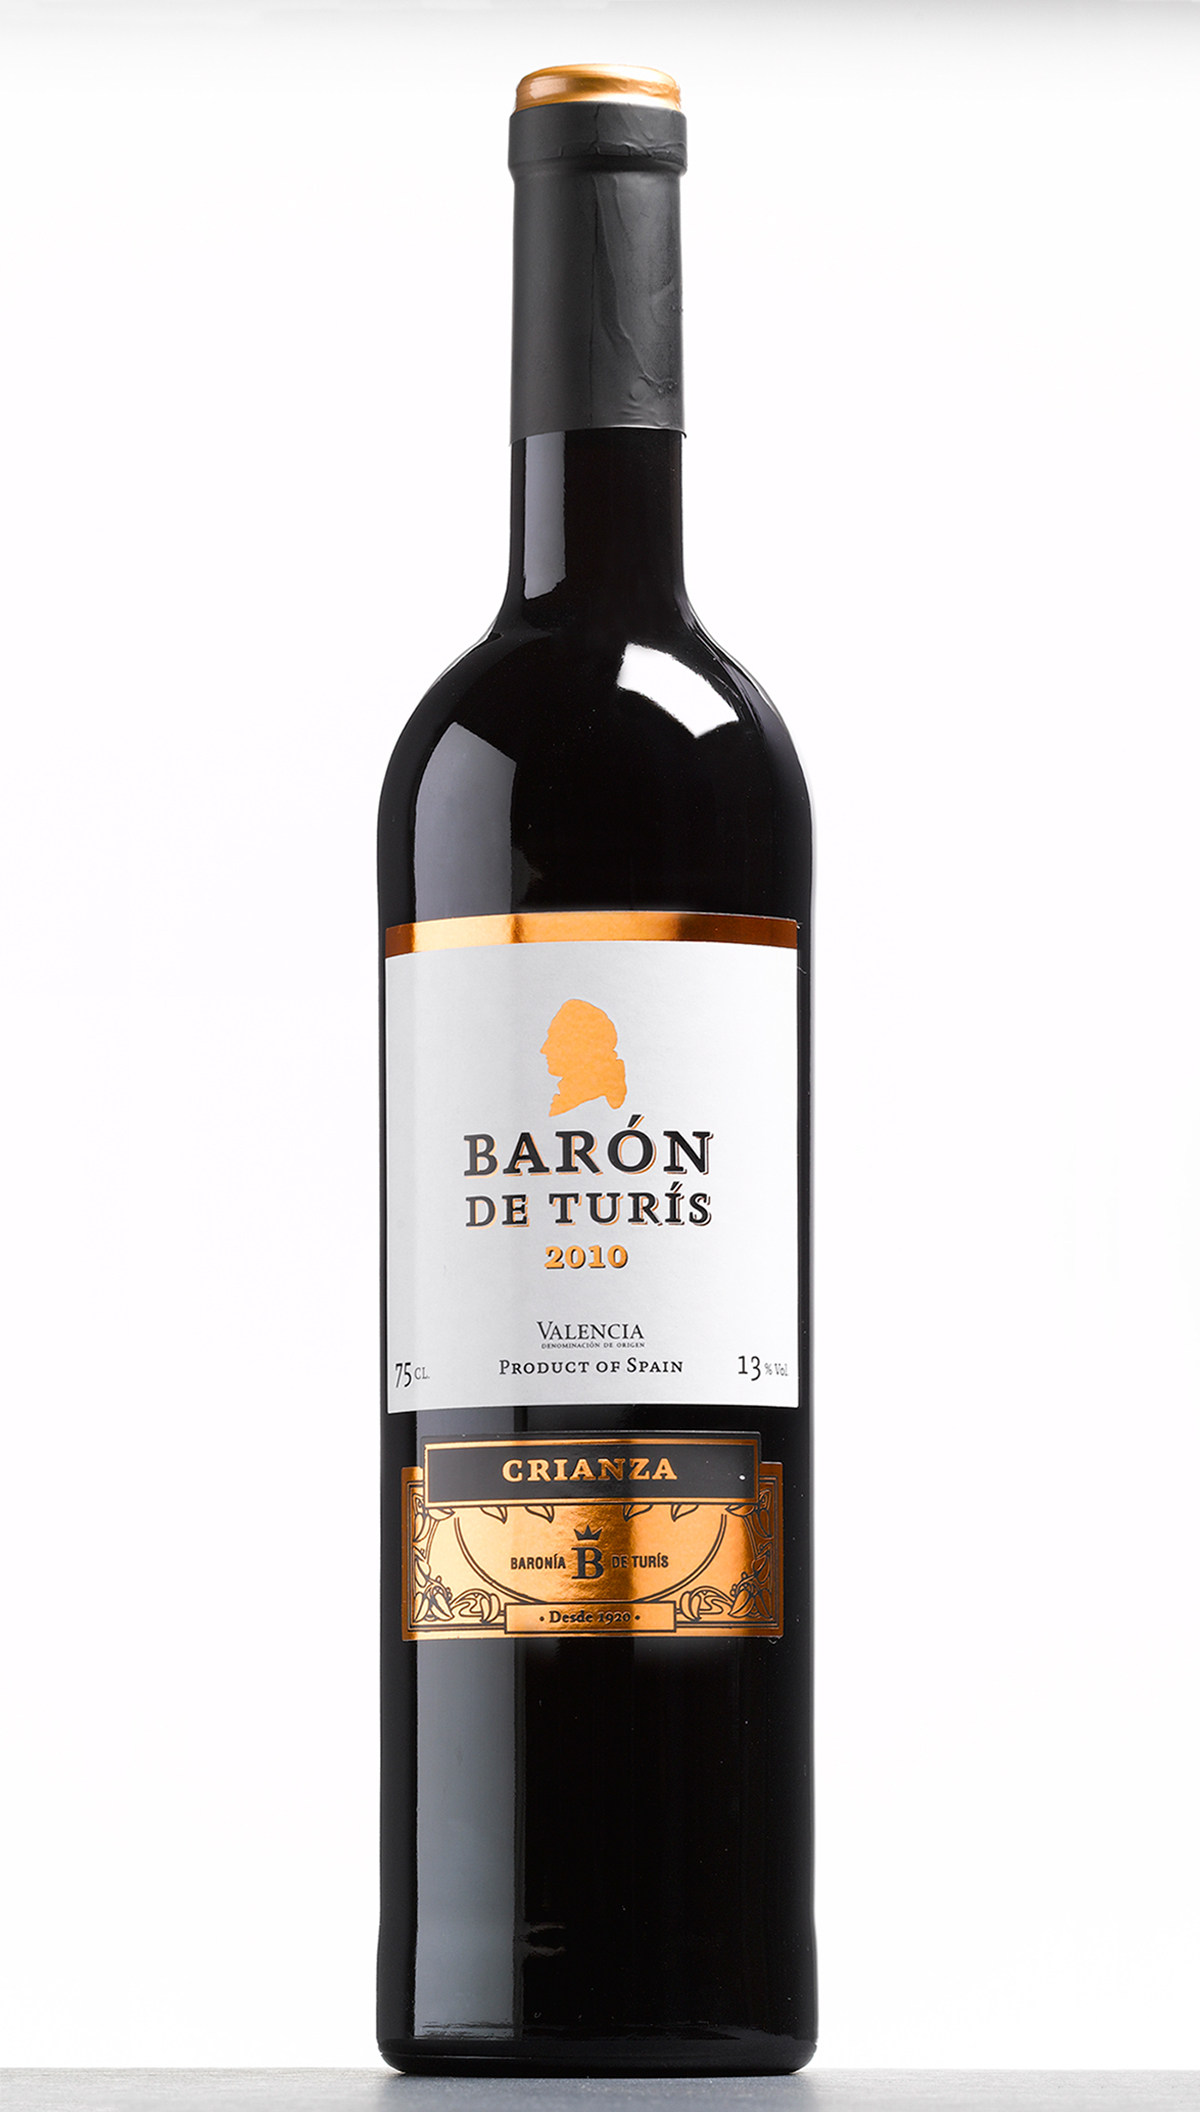 vino baron de turis etiqueta etiqueta vino wine Label wine label